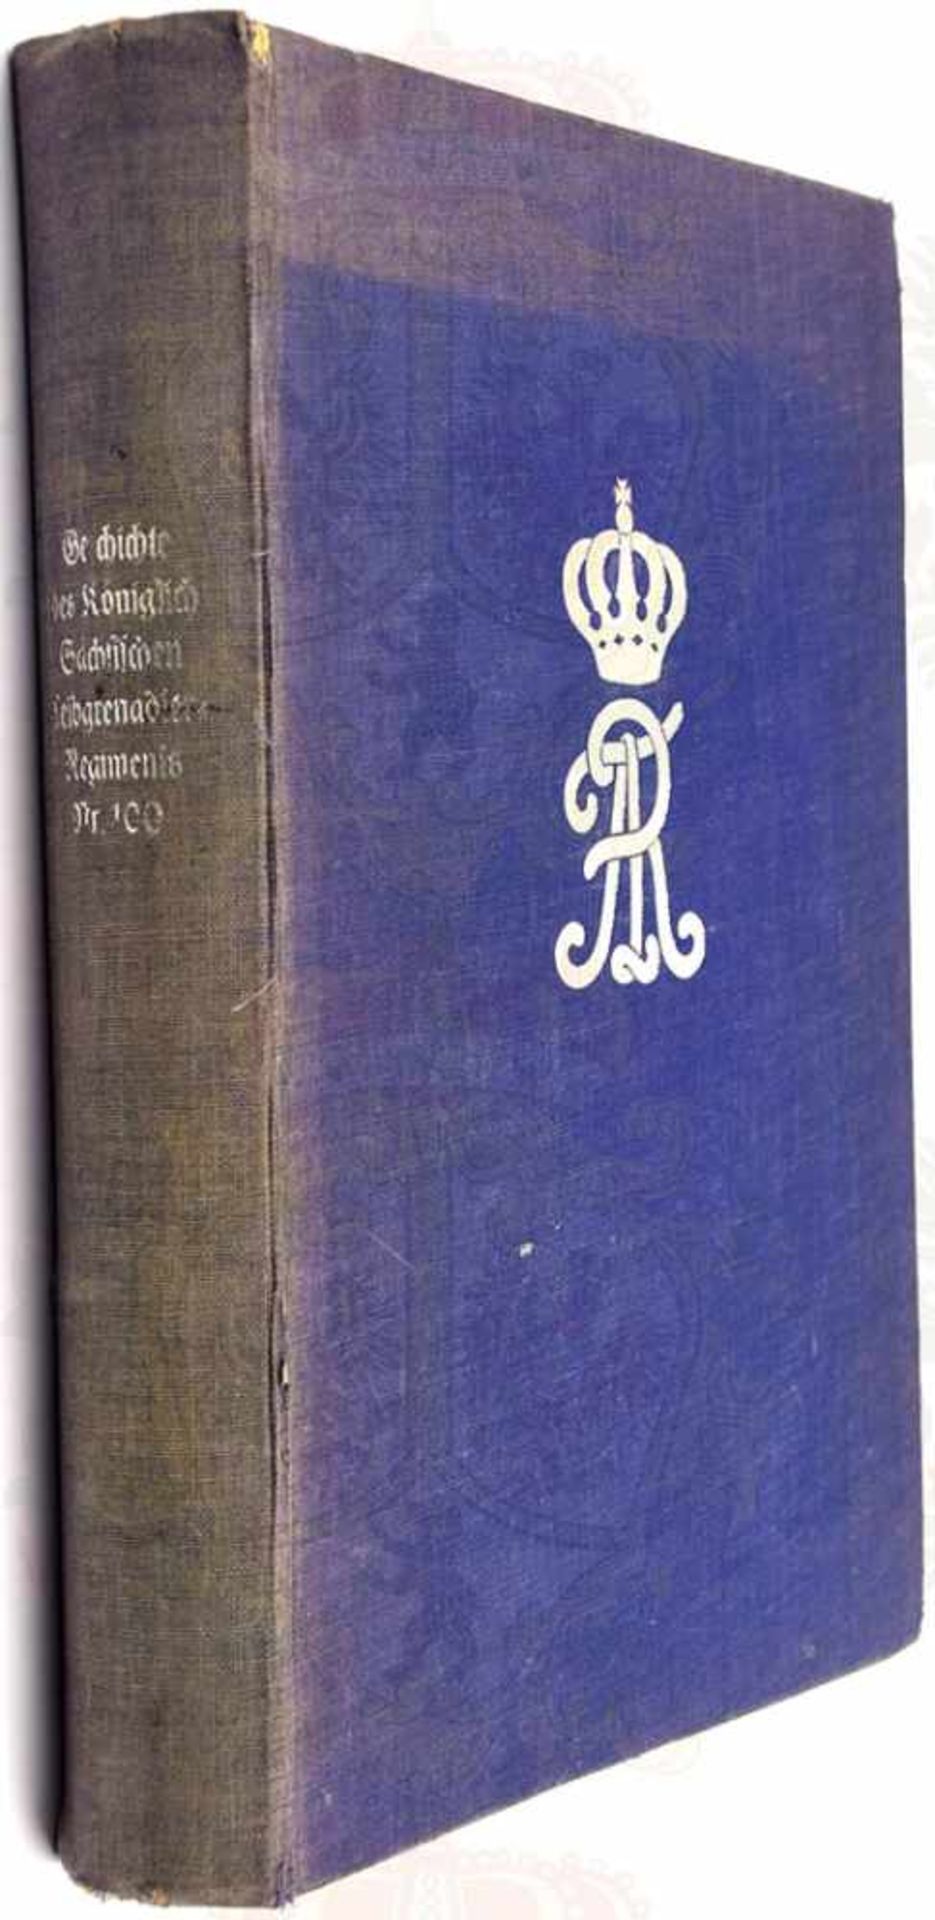 KÖNIGLICH SÄCHSISCHES LEIBGRENADIER-REGIMENT NR. 100, (von 1670-1918), H. Herrmann, Zittau 1926, 113